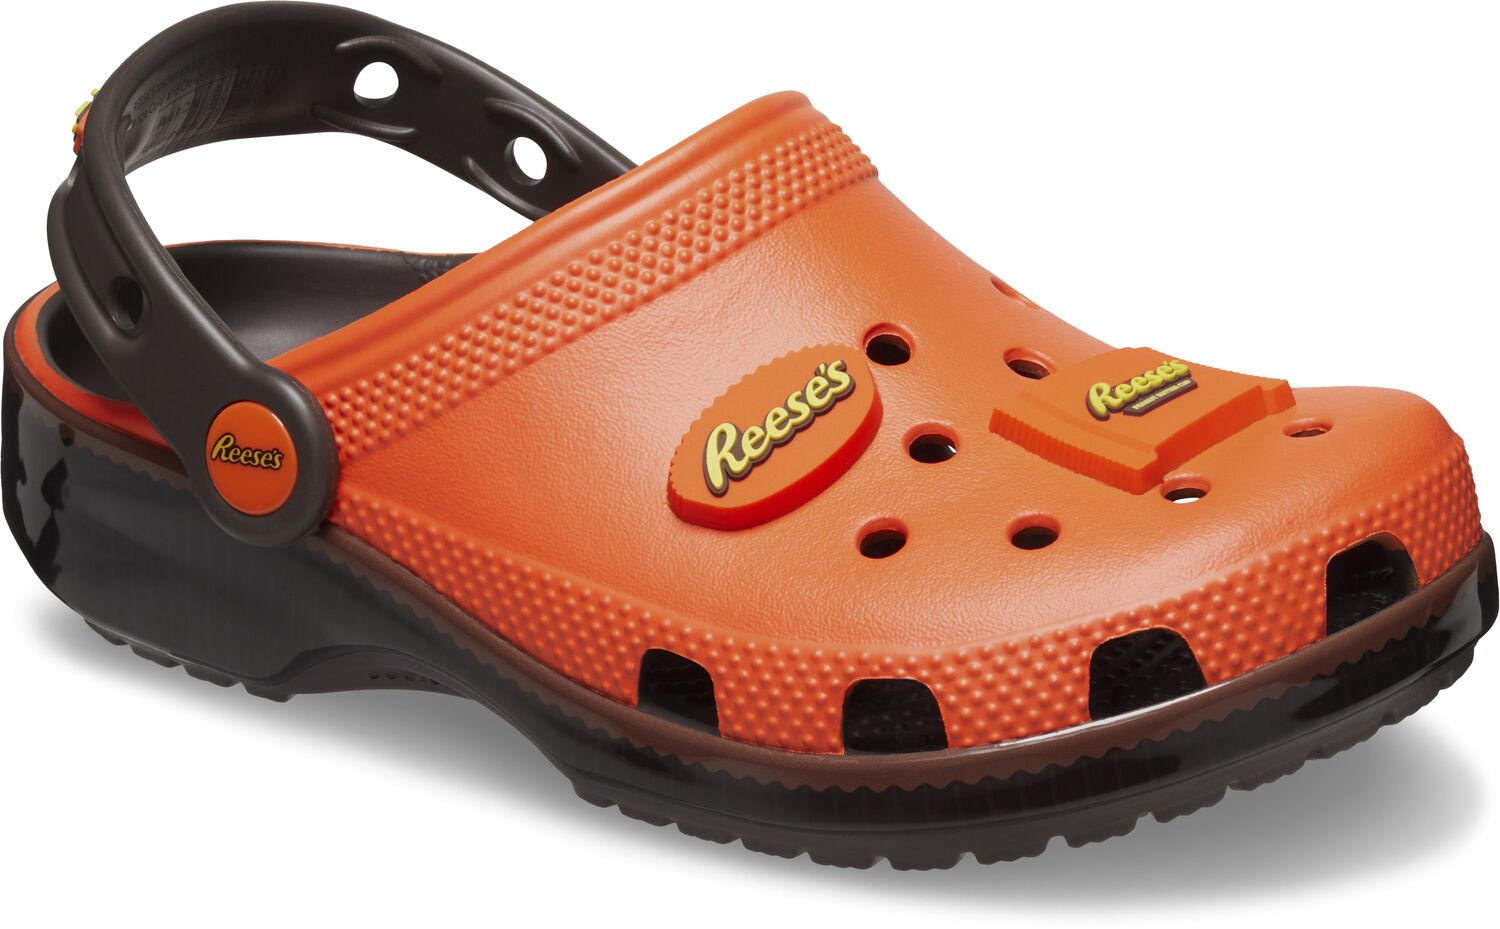 Crocs REESE’S Kids’ Classic Clogs